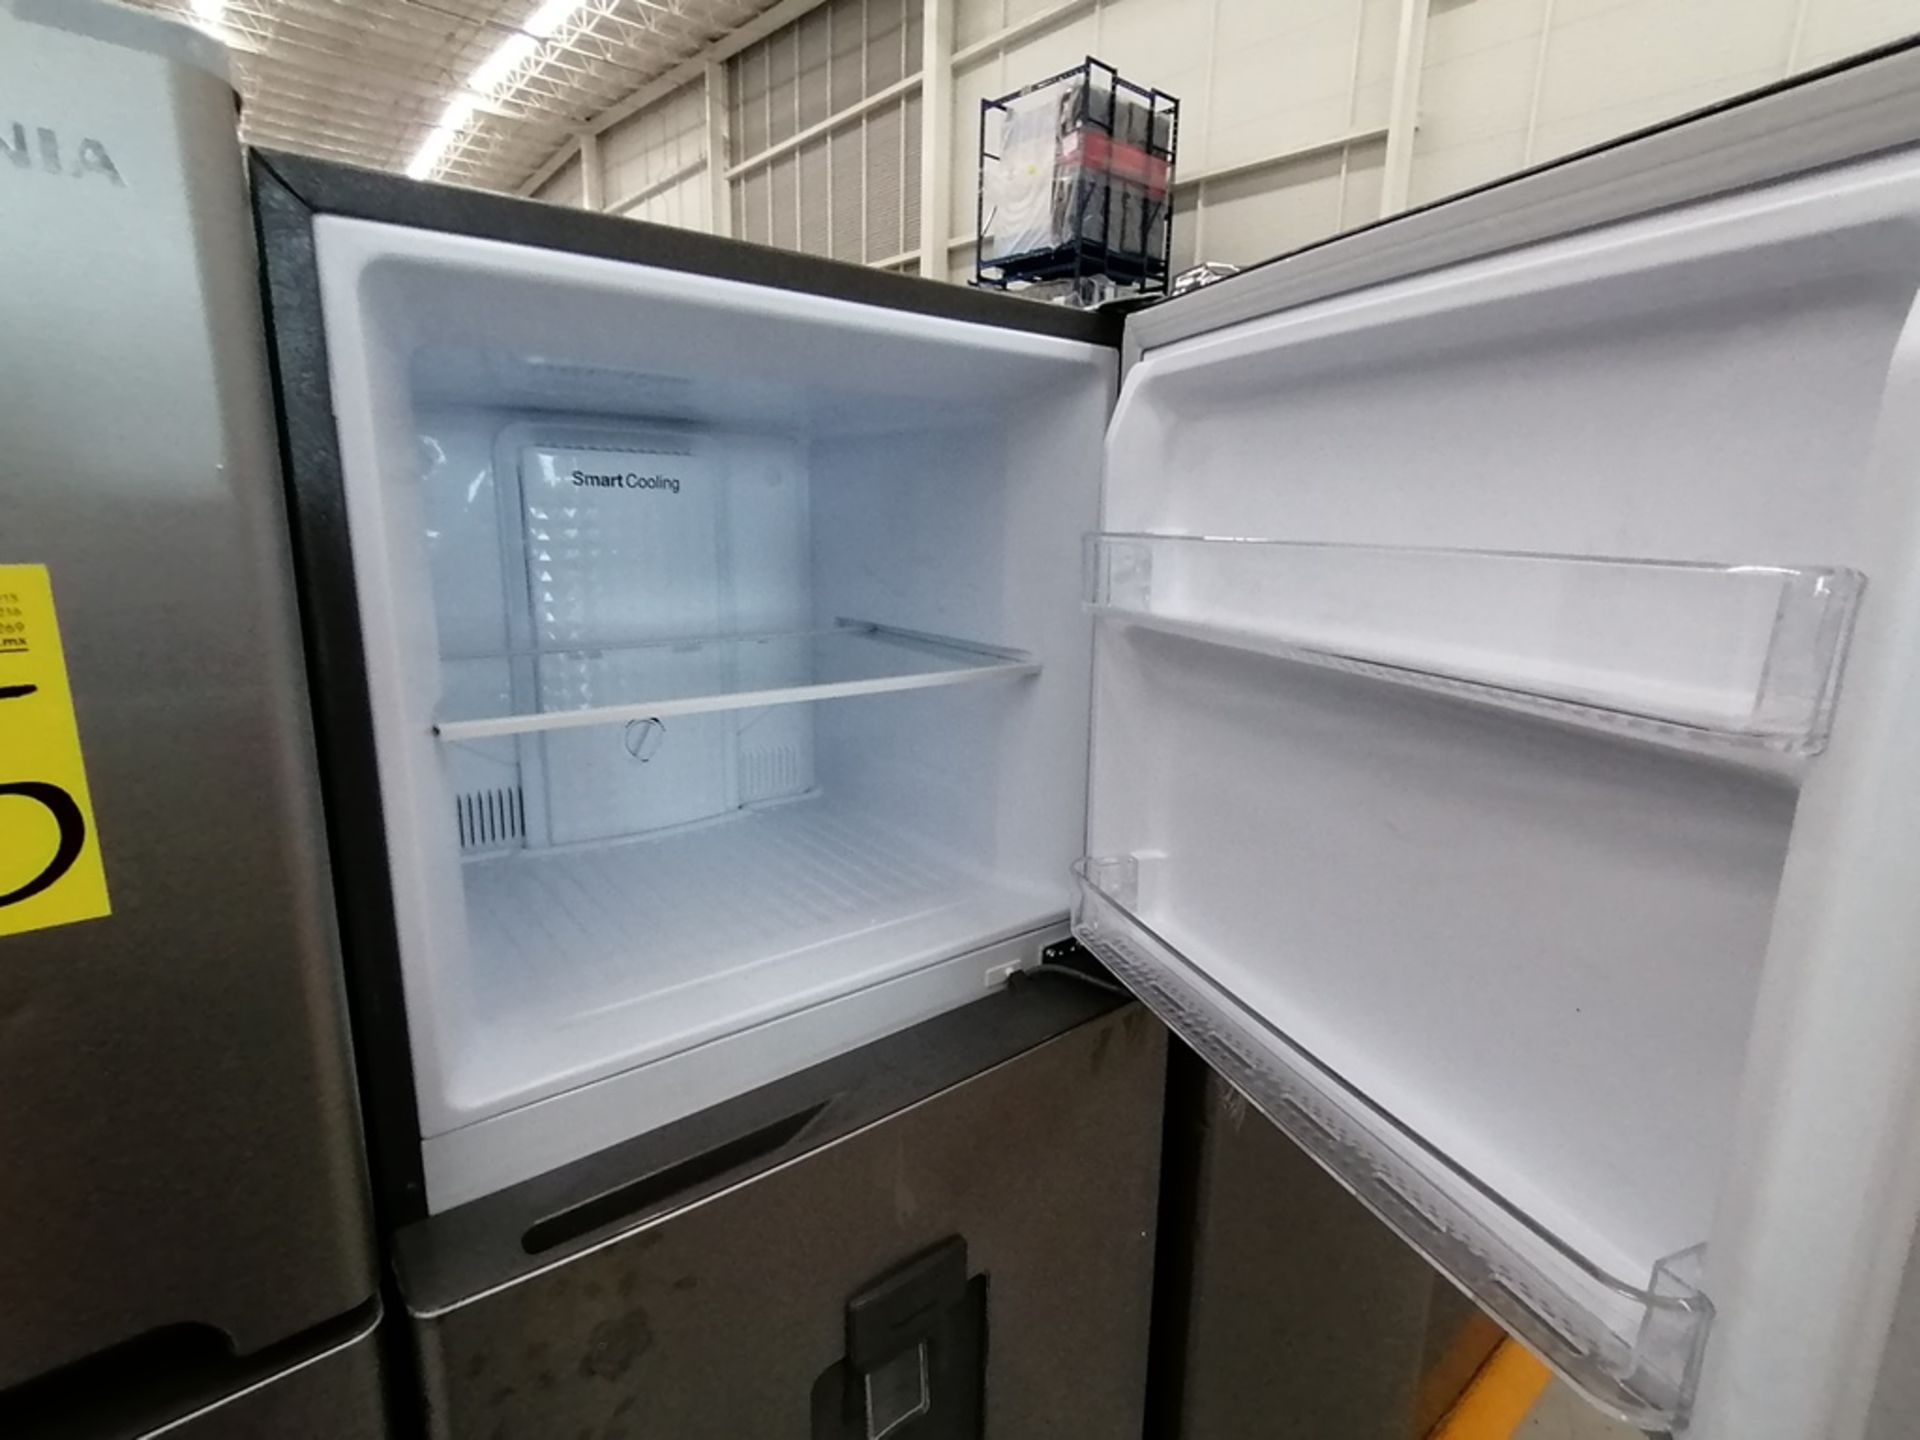 Lote de 2 Refrigeradores, Incluye: 1 Refrigerador con dispensador de agua, Marca Winia, Modelo DFR4 - Image 4 of 16